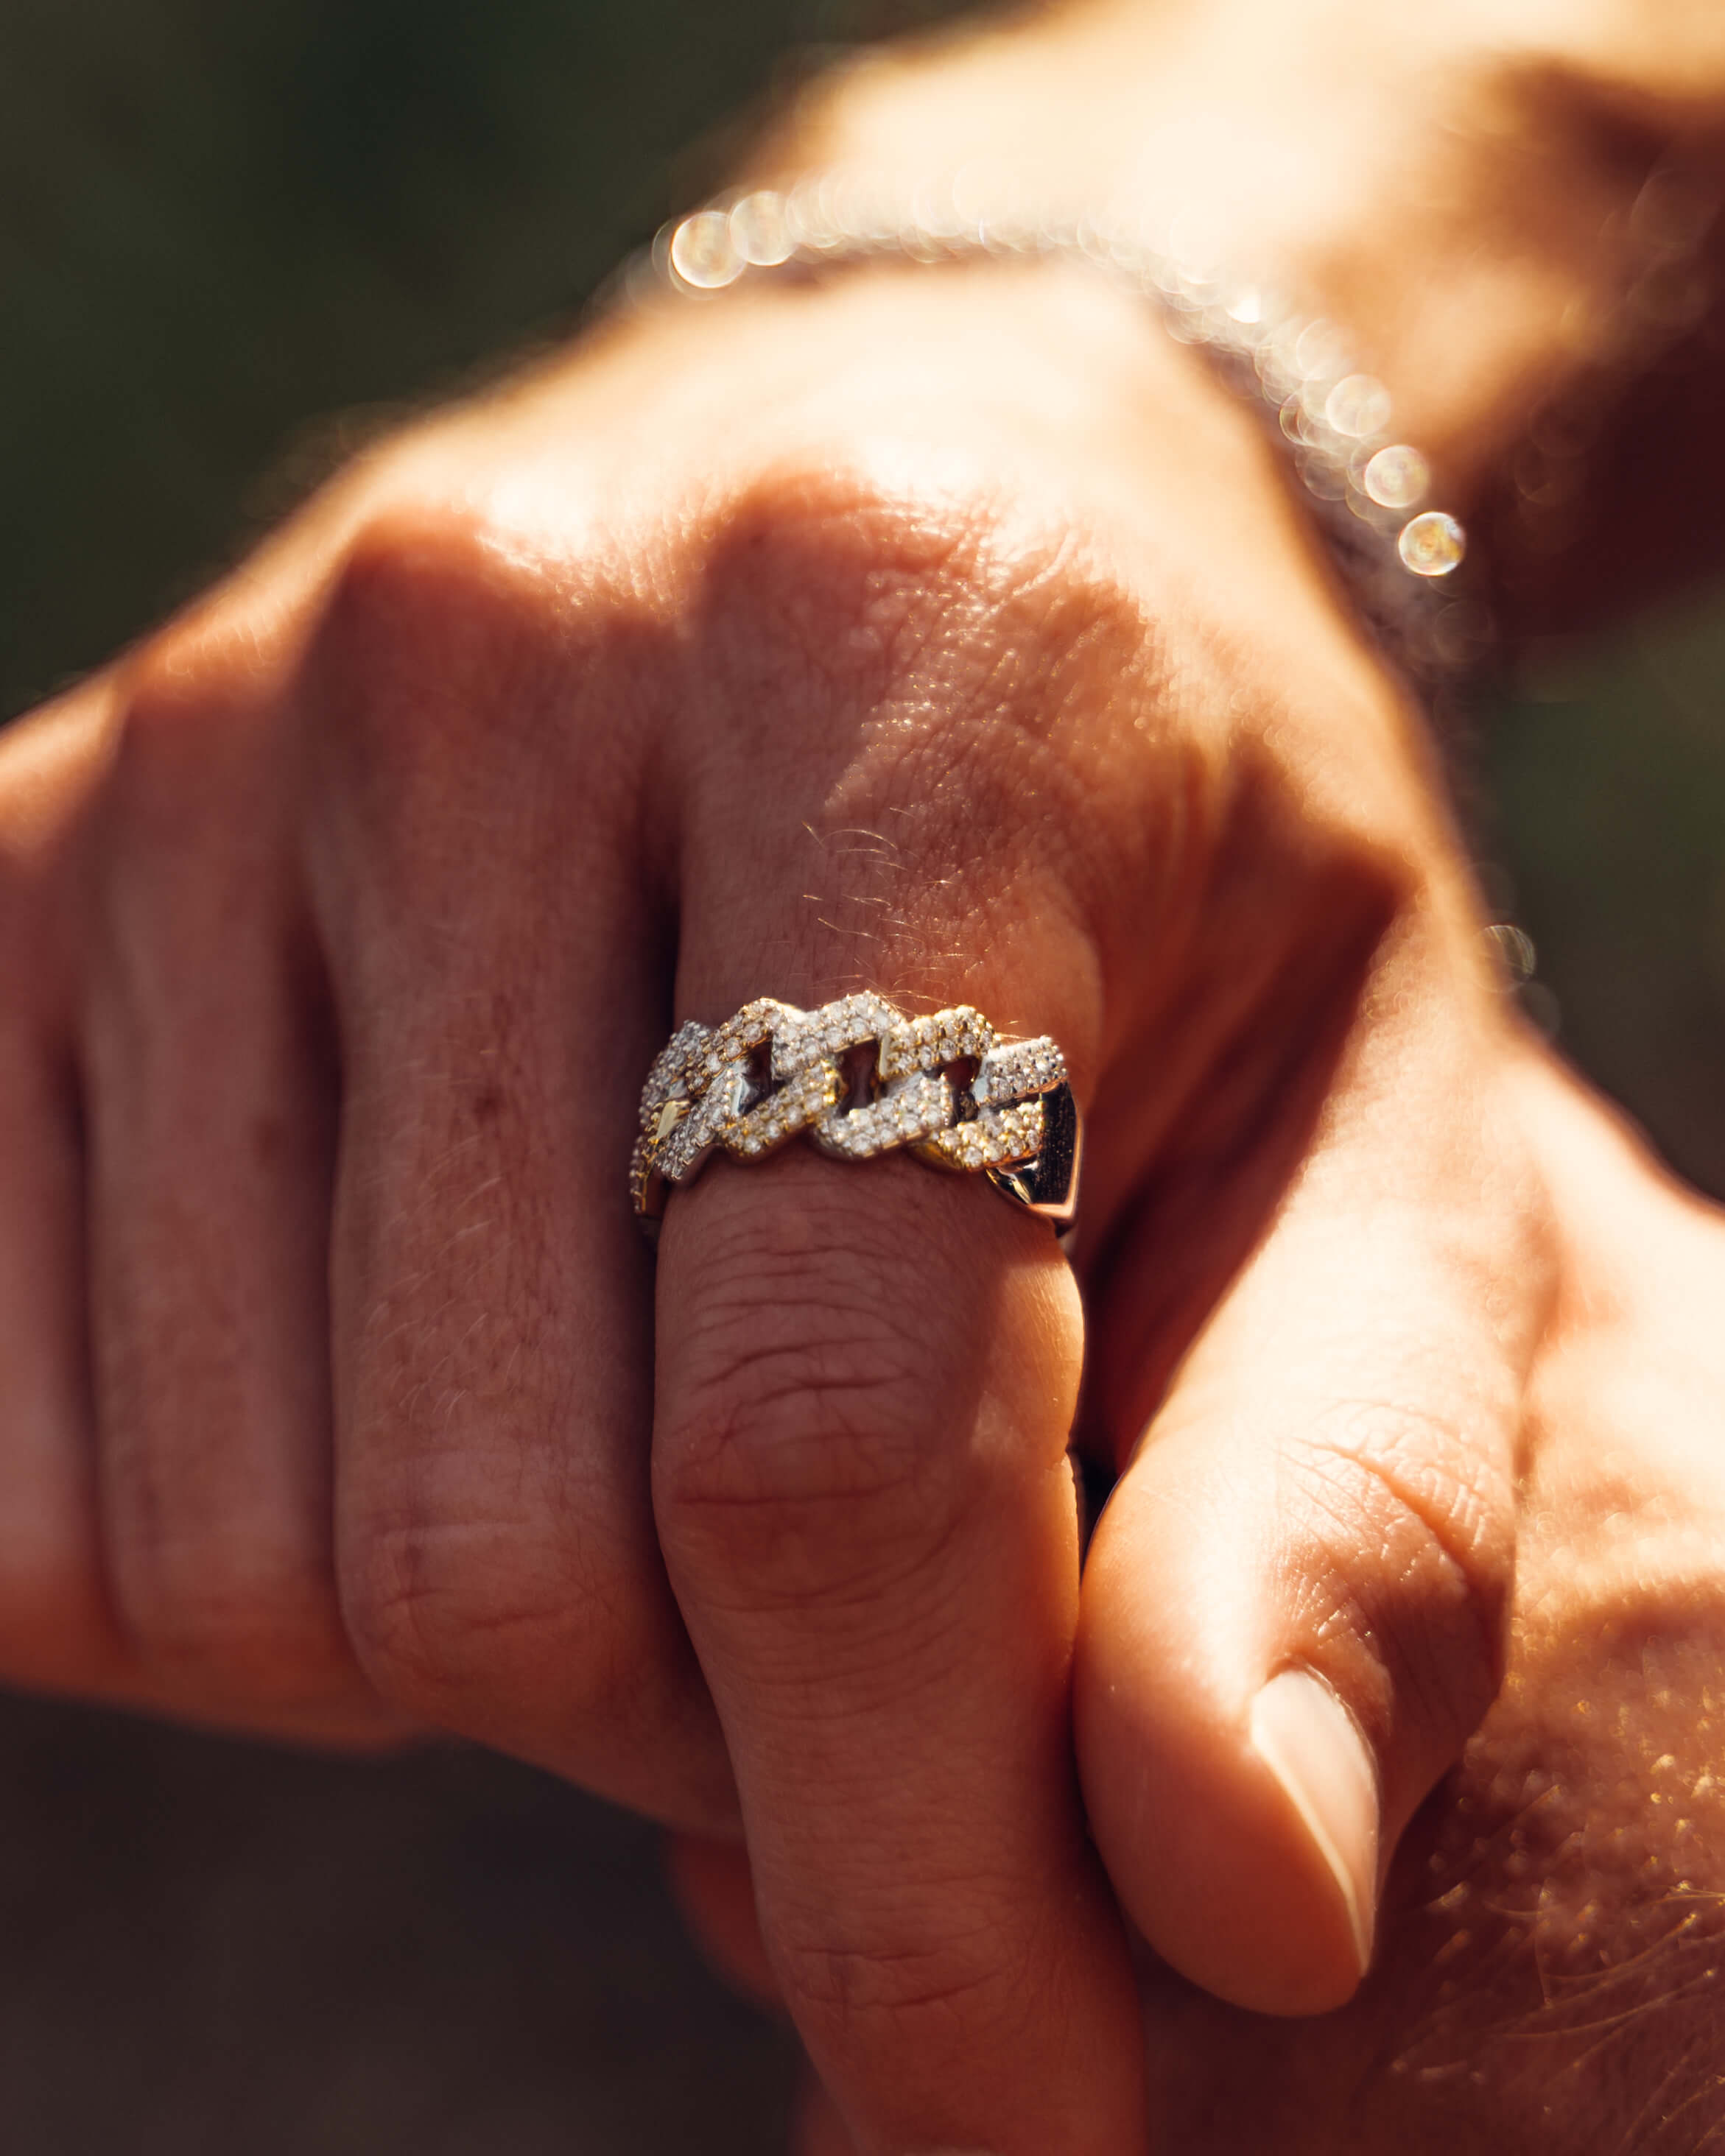 Men's Diamond Rings for Sale - eBay